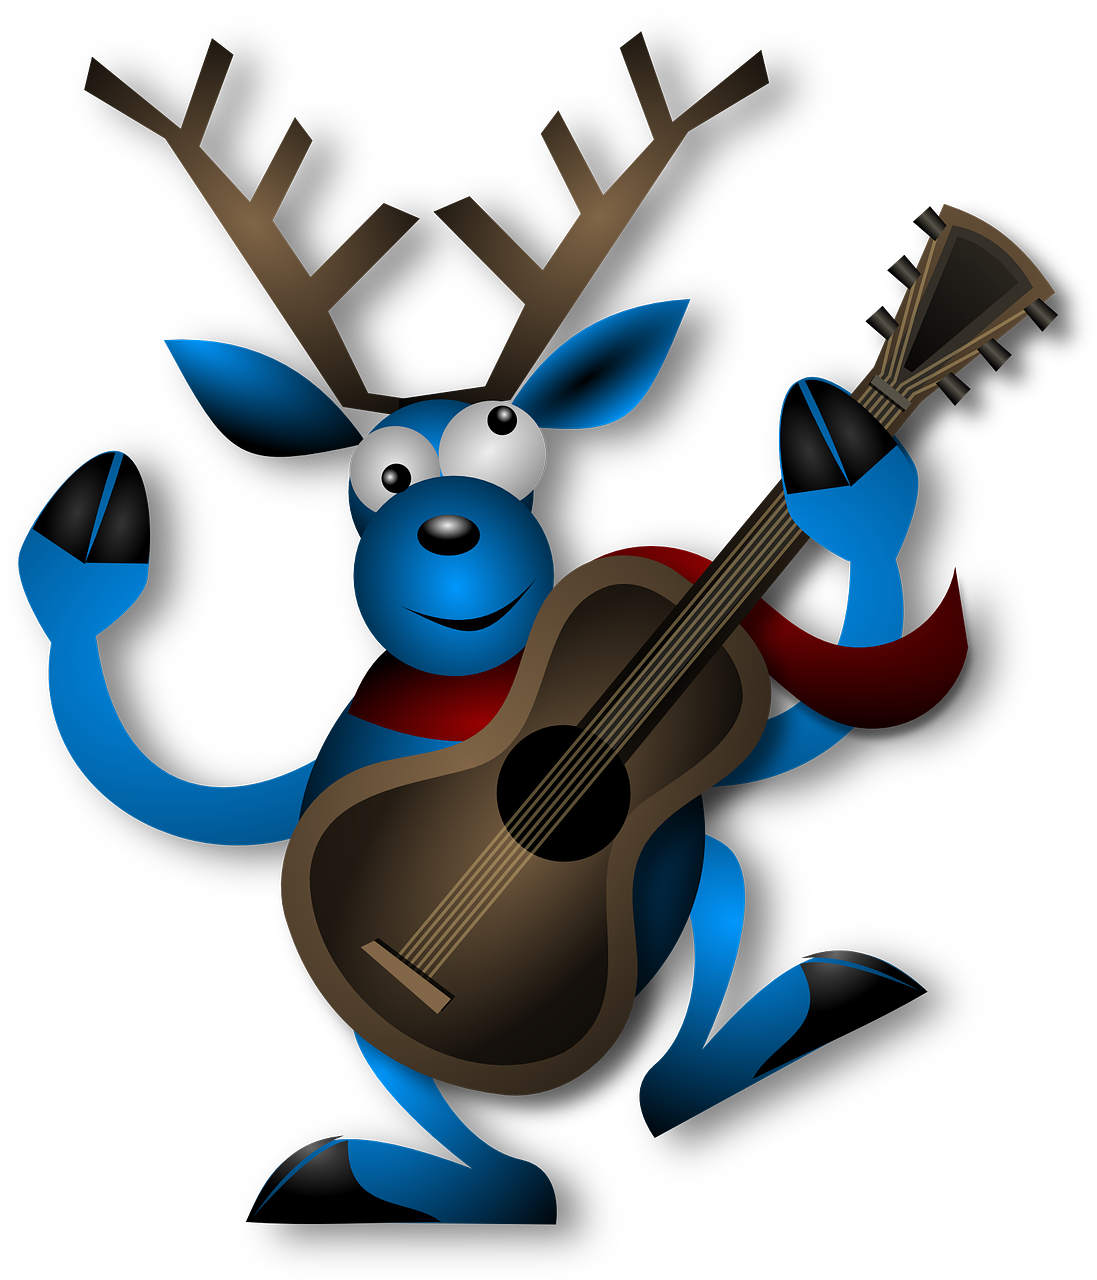 dancing reindeer